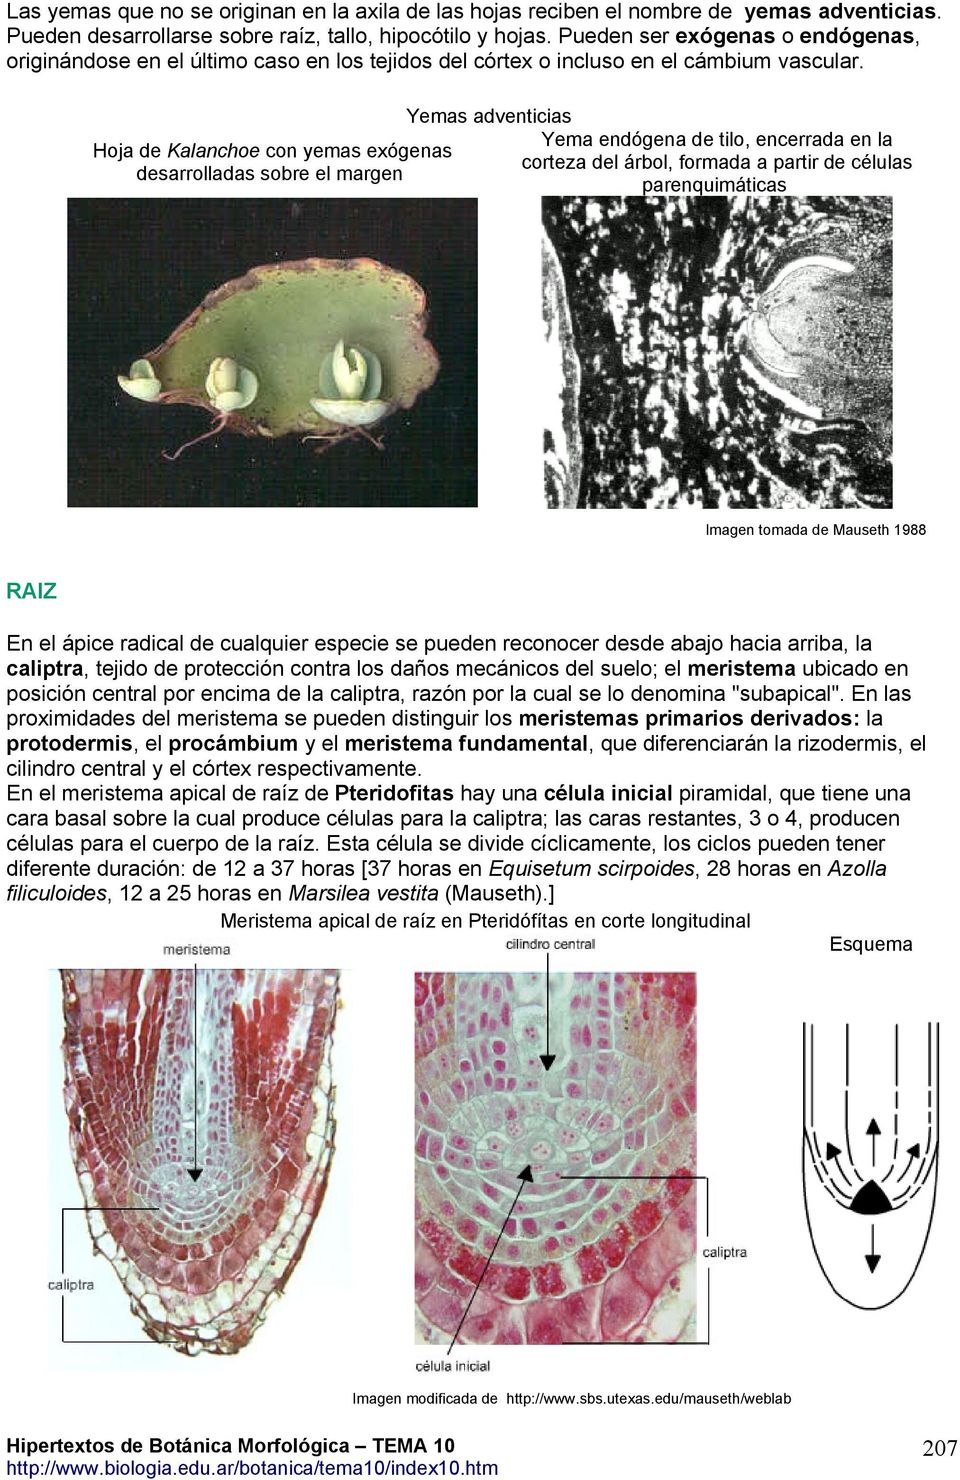 Hoja de Kalanchoe con yemas exógenas desarrolladas sobre el margen Yemas adventicias Yema endógena de tilo, encerrada en la corteza del árbol, formada a partir de células parenquimáticas Imagen